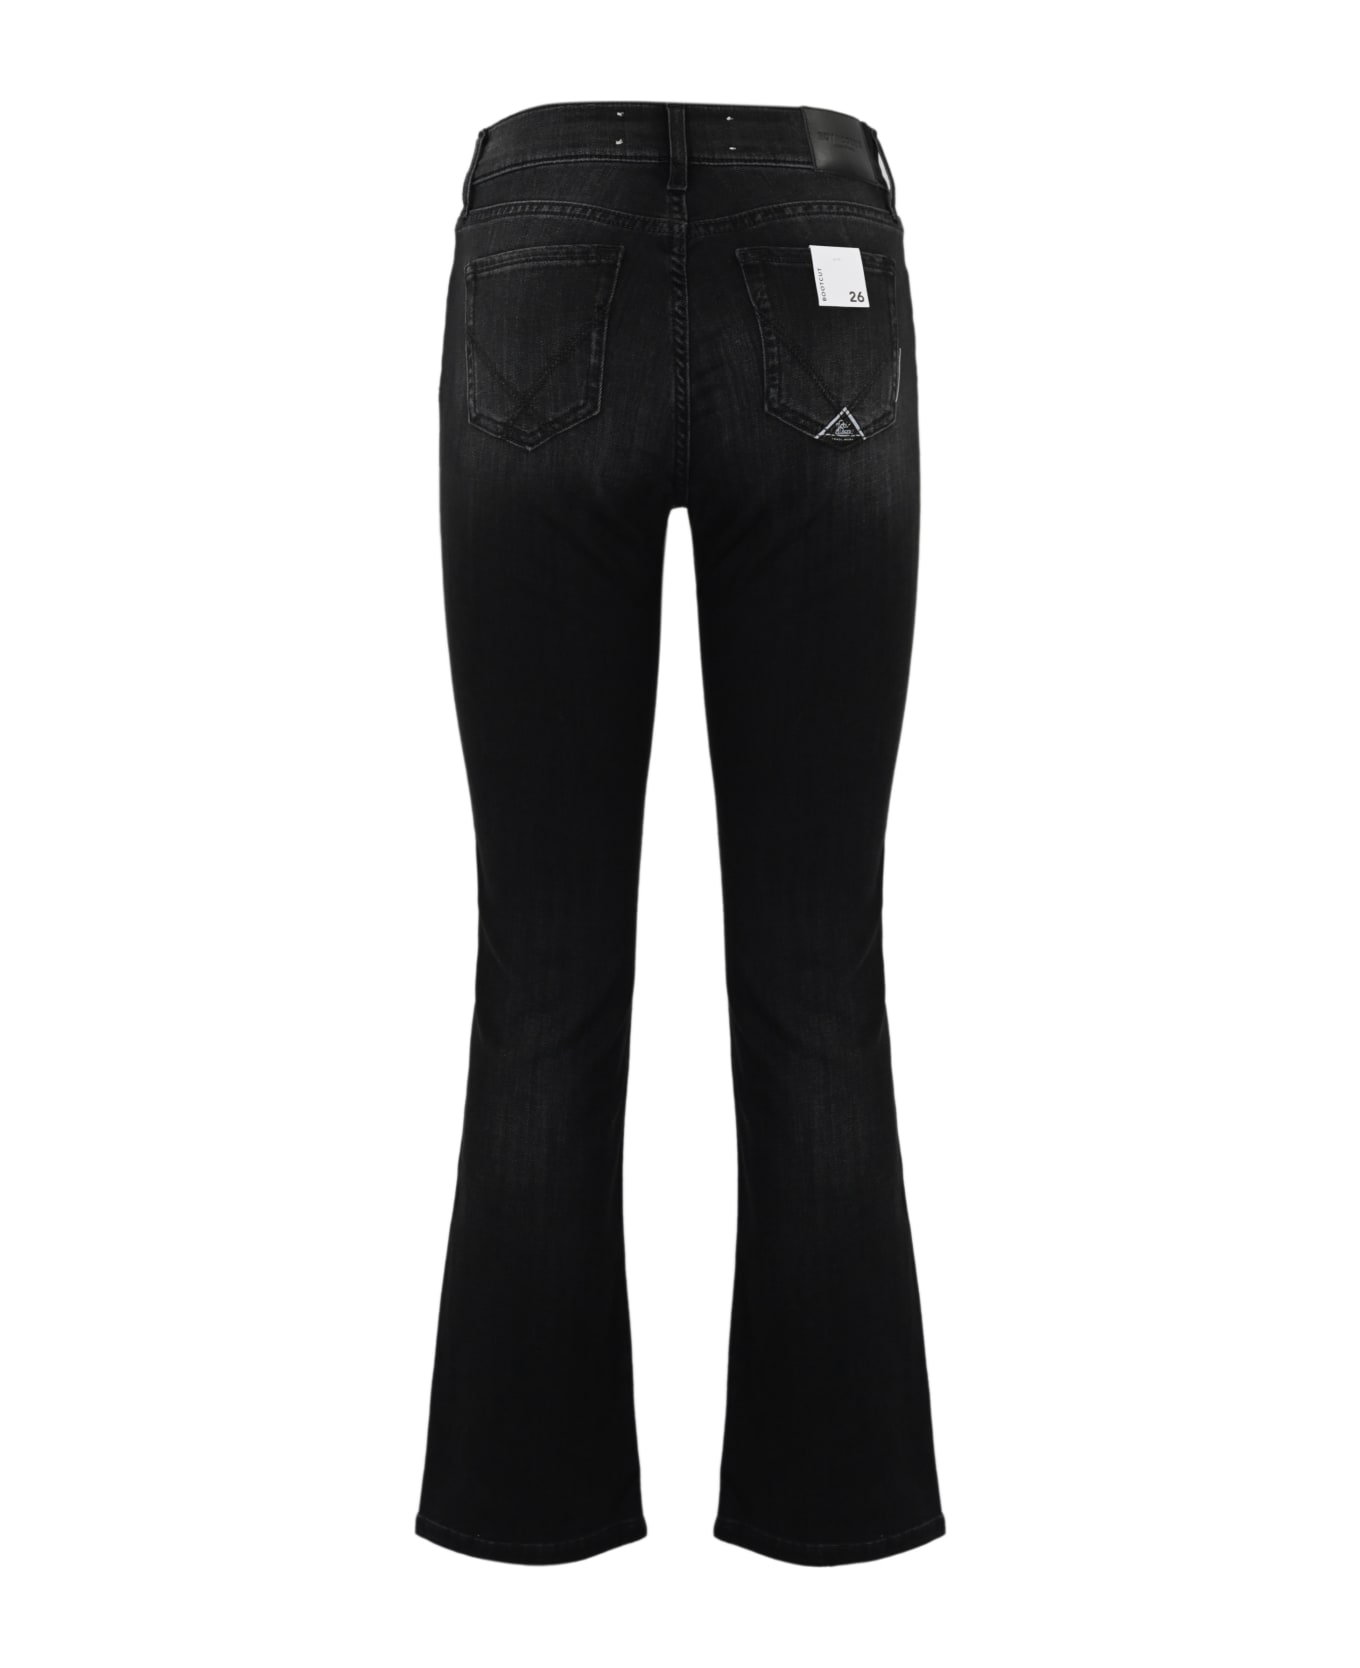 Roy Rogers Flare Jeans In Black Denim - Denim black